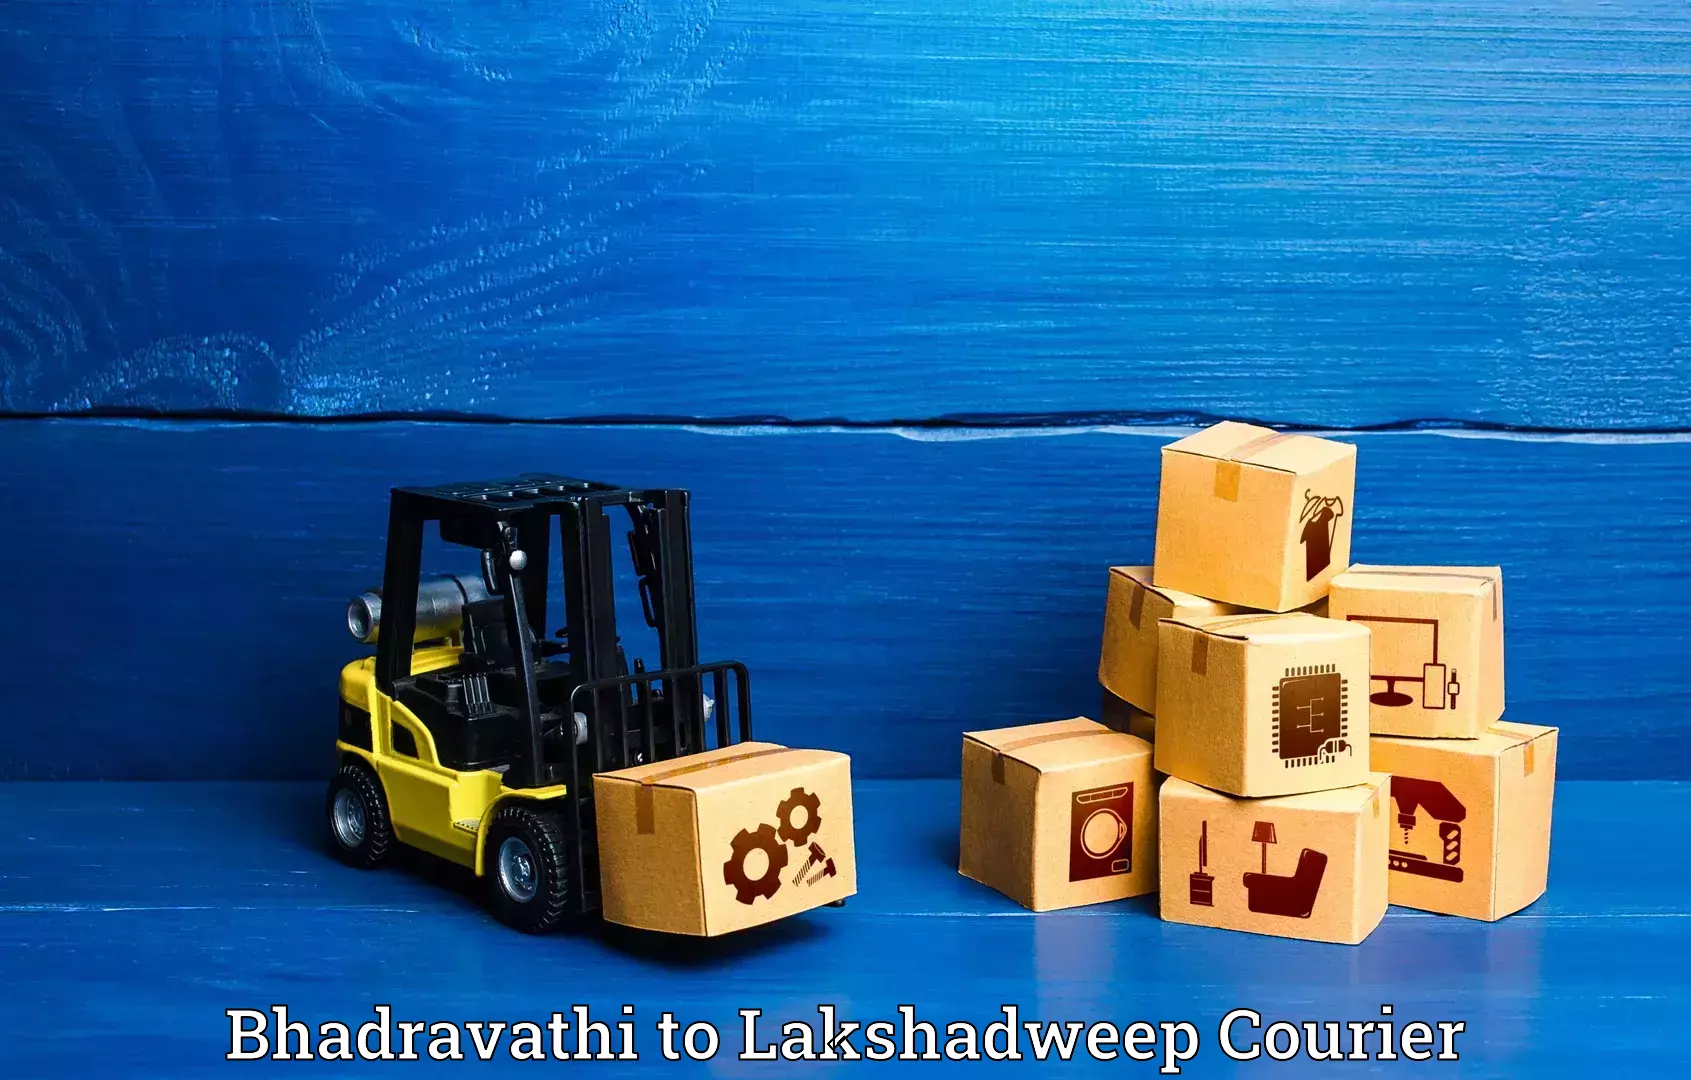 Luggage delivery system Bhadravathi to Lakshadweep